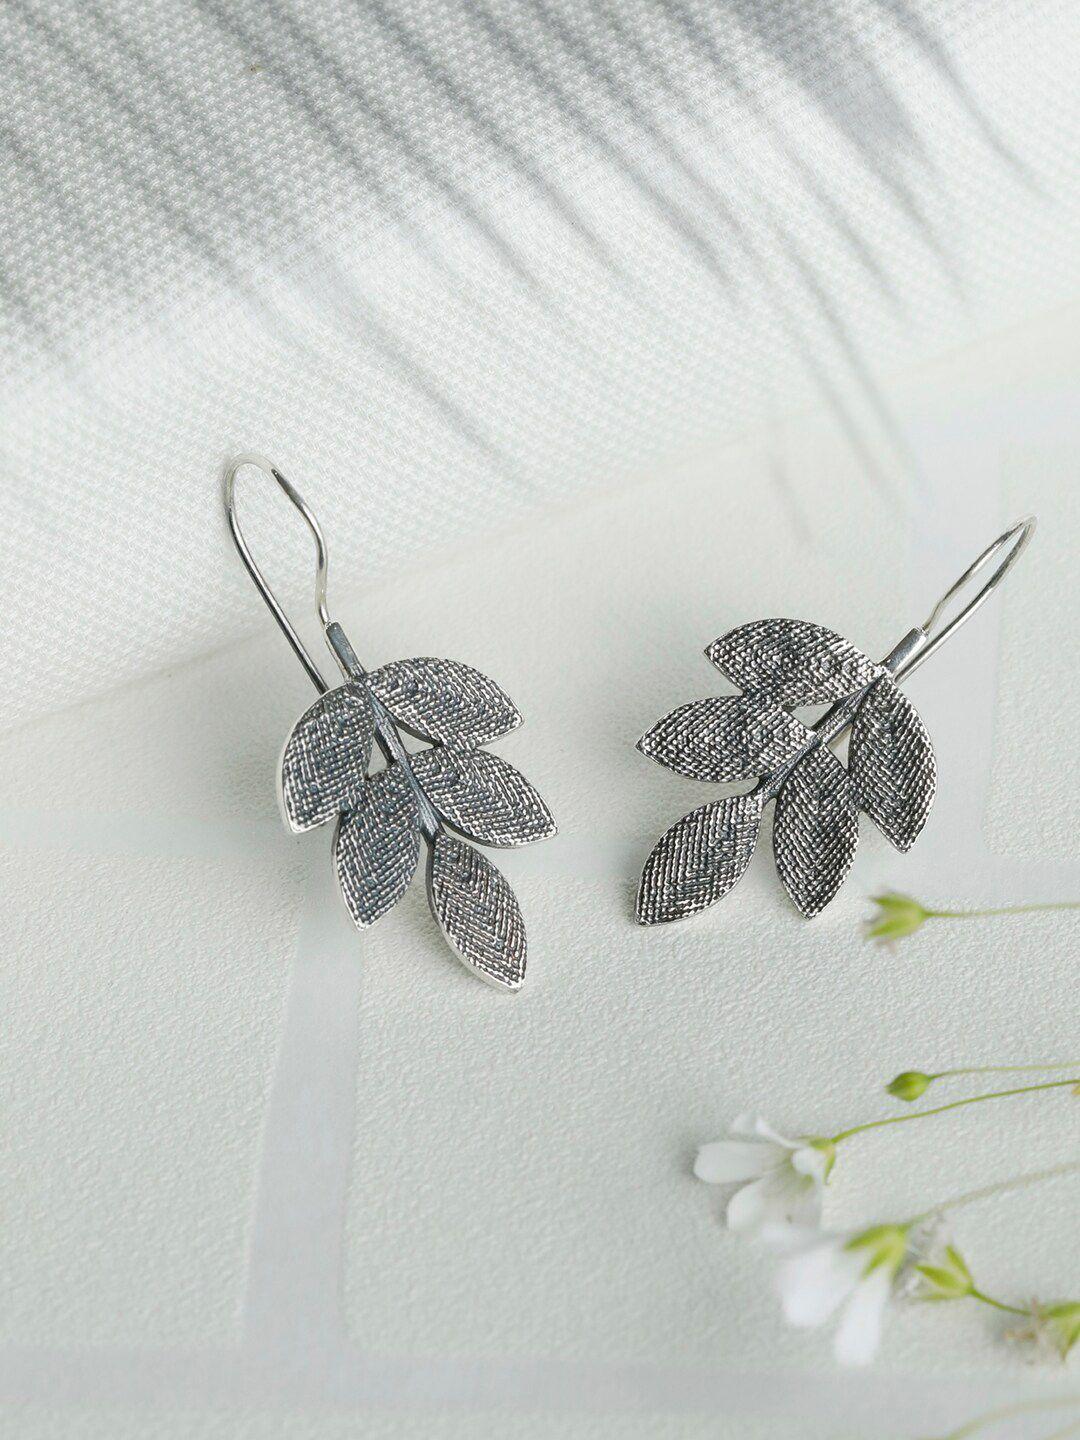 sheer by priyaasi silver-toned 92.5 sterling silver leaf shaped drop earrings